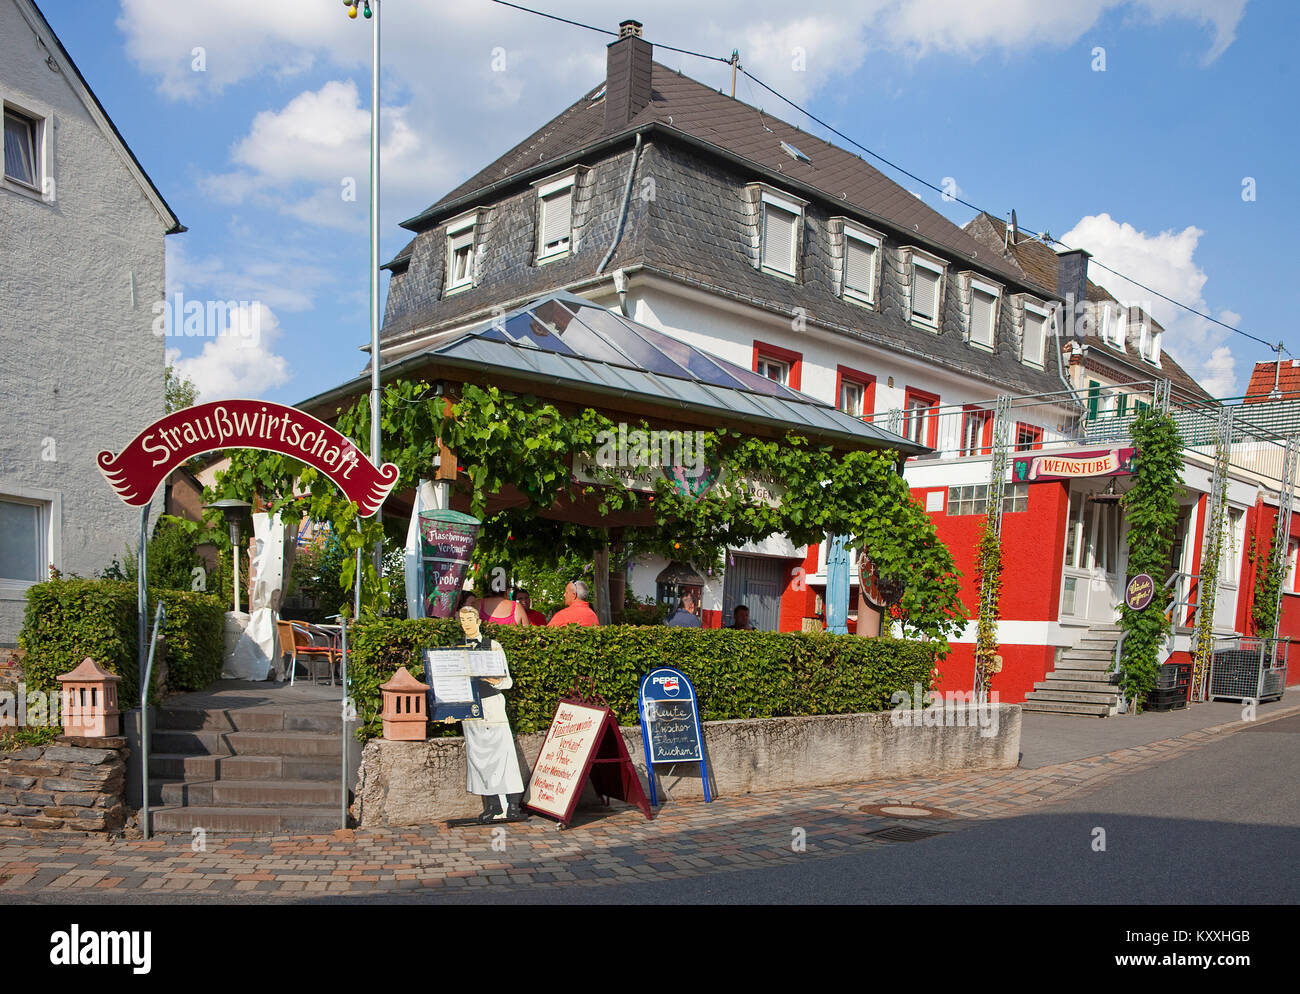 Strausswirtschaft in Neumagen-Dhron, Neumagen-Dhron ist der älteste Weinort Deutschlands, Mosel, Rheinland-Pfalz, Deutschland, Europa Stockfoto